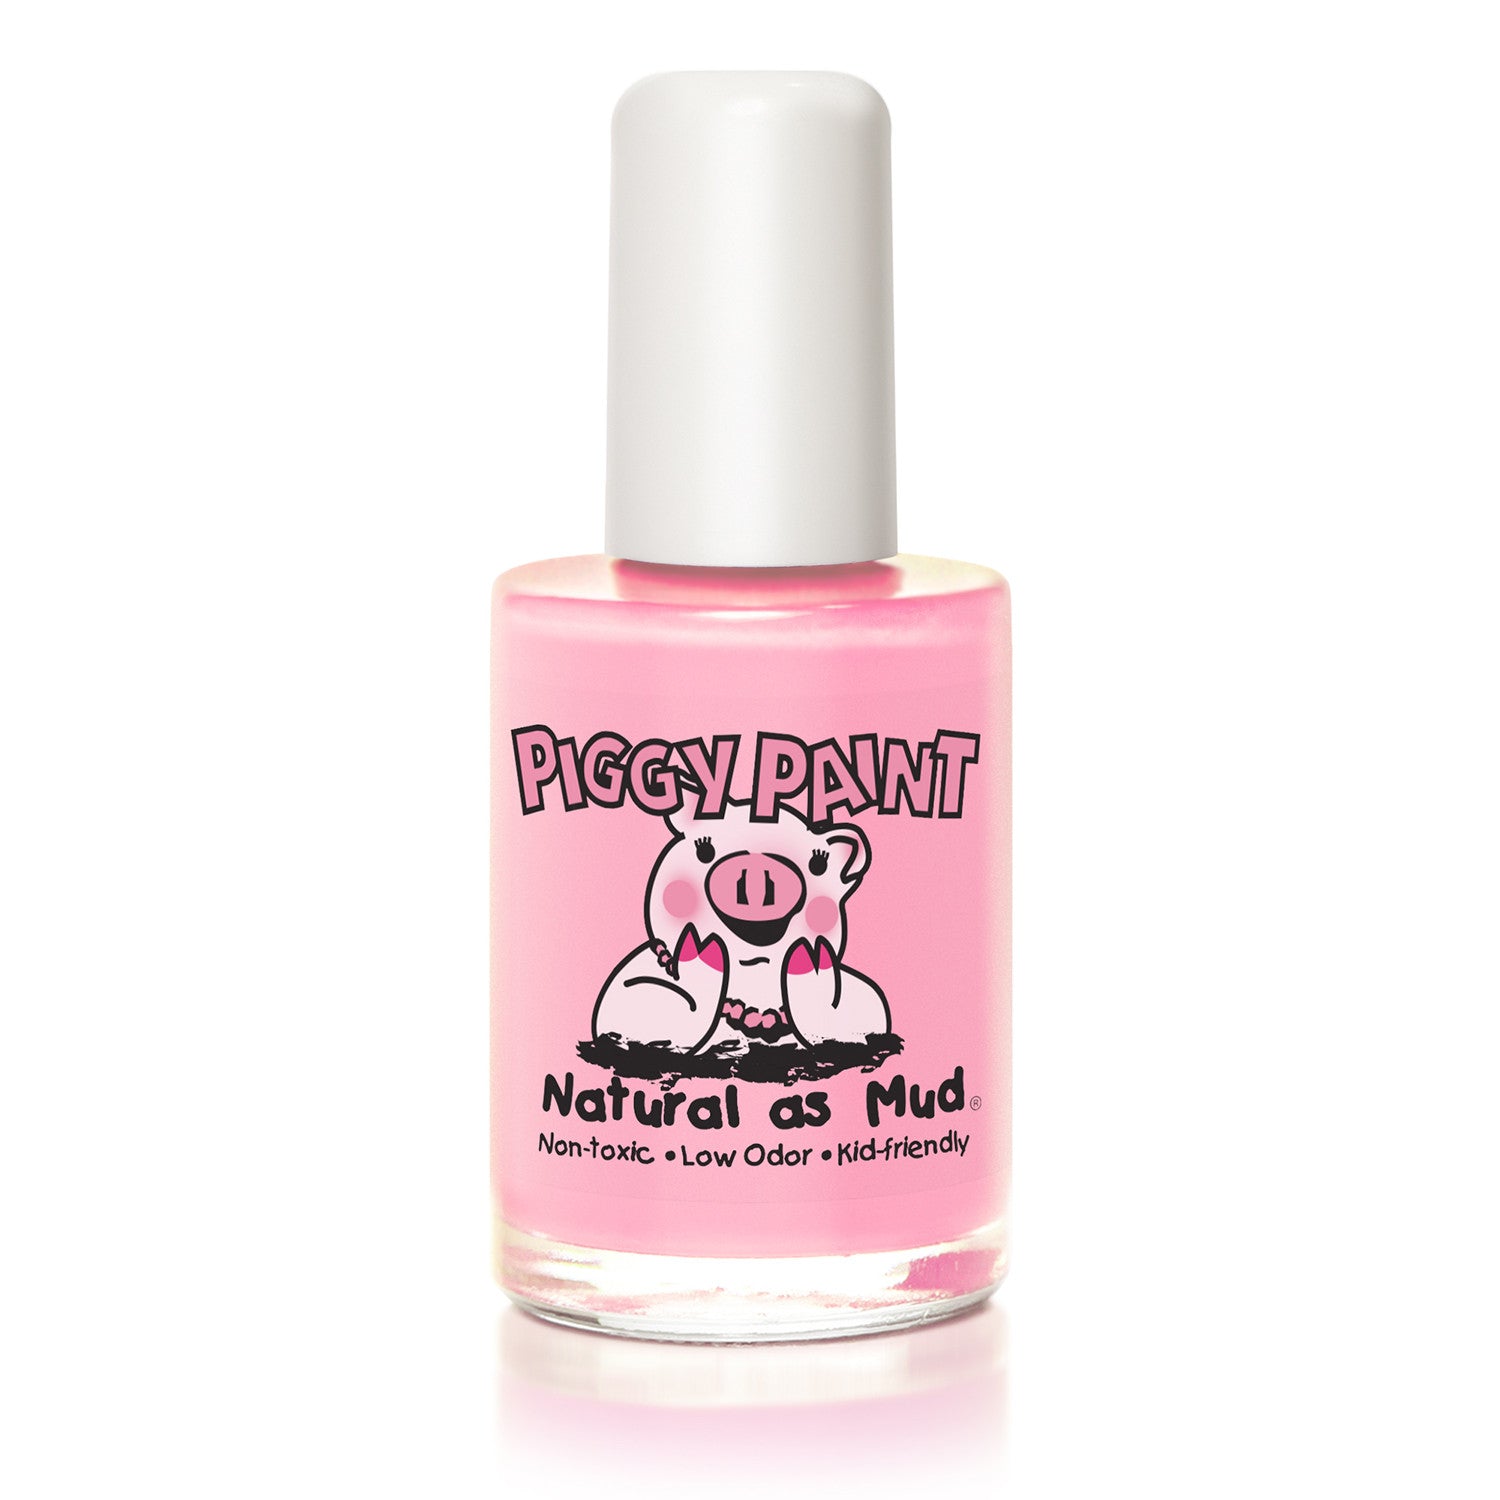 Piggy Paint Muddles the Pig Natural Non-toxic Nail Polish